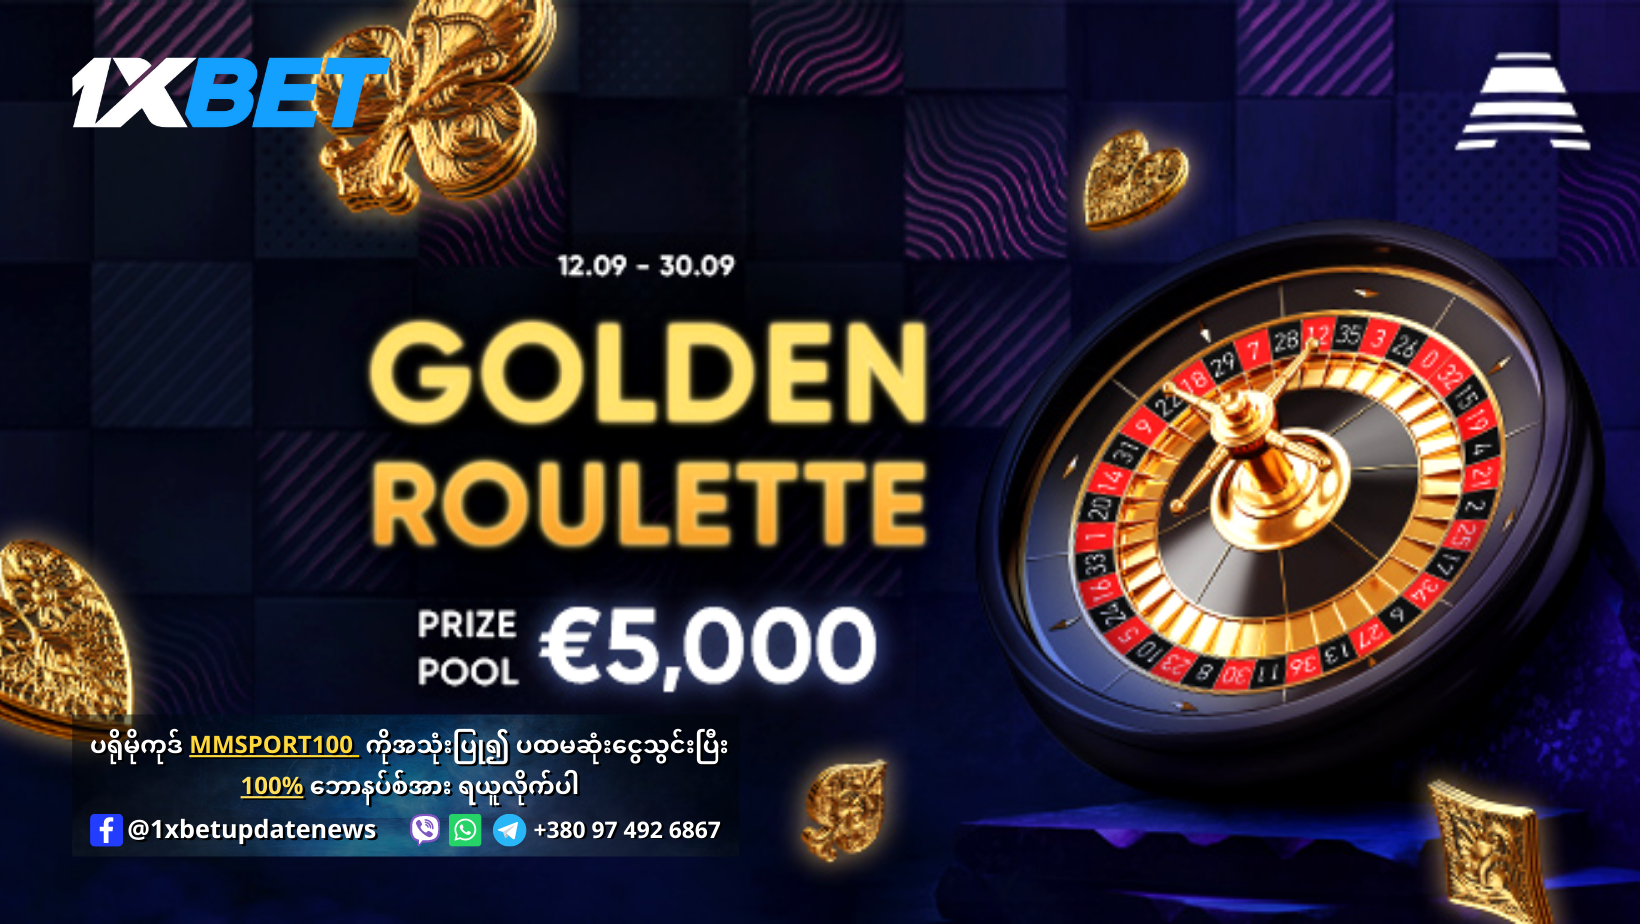 Golden Roulette Offer